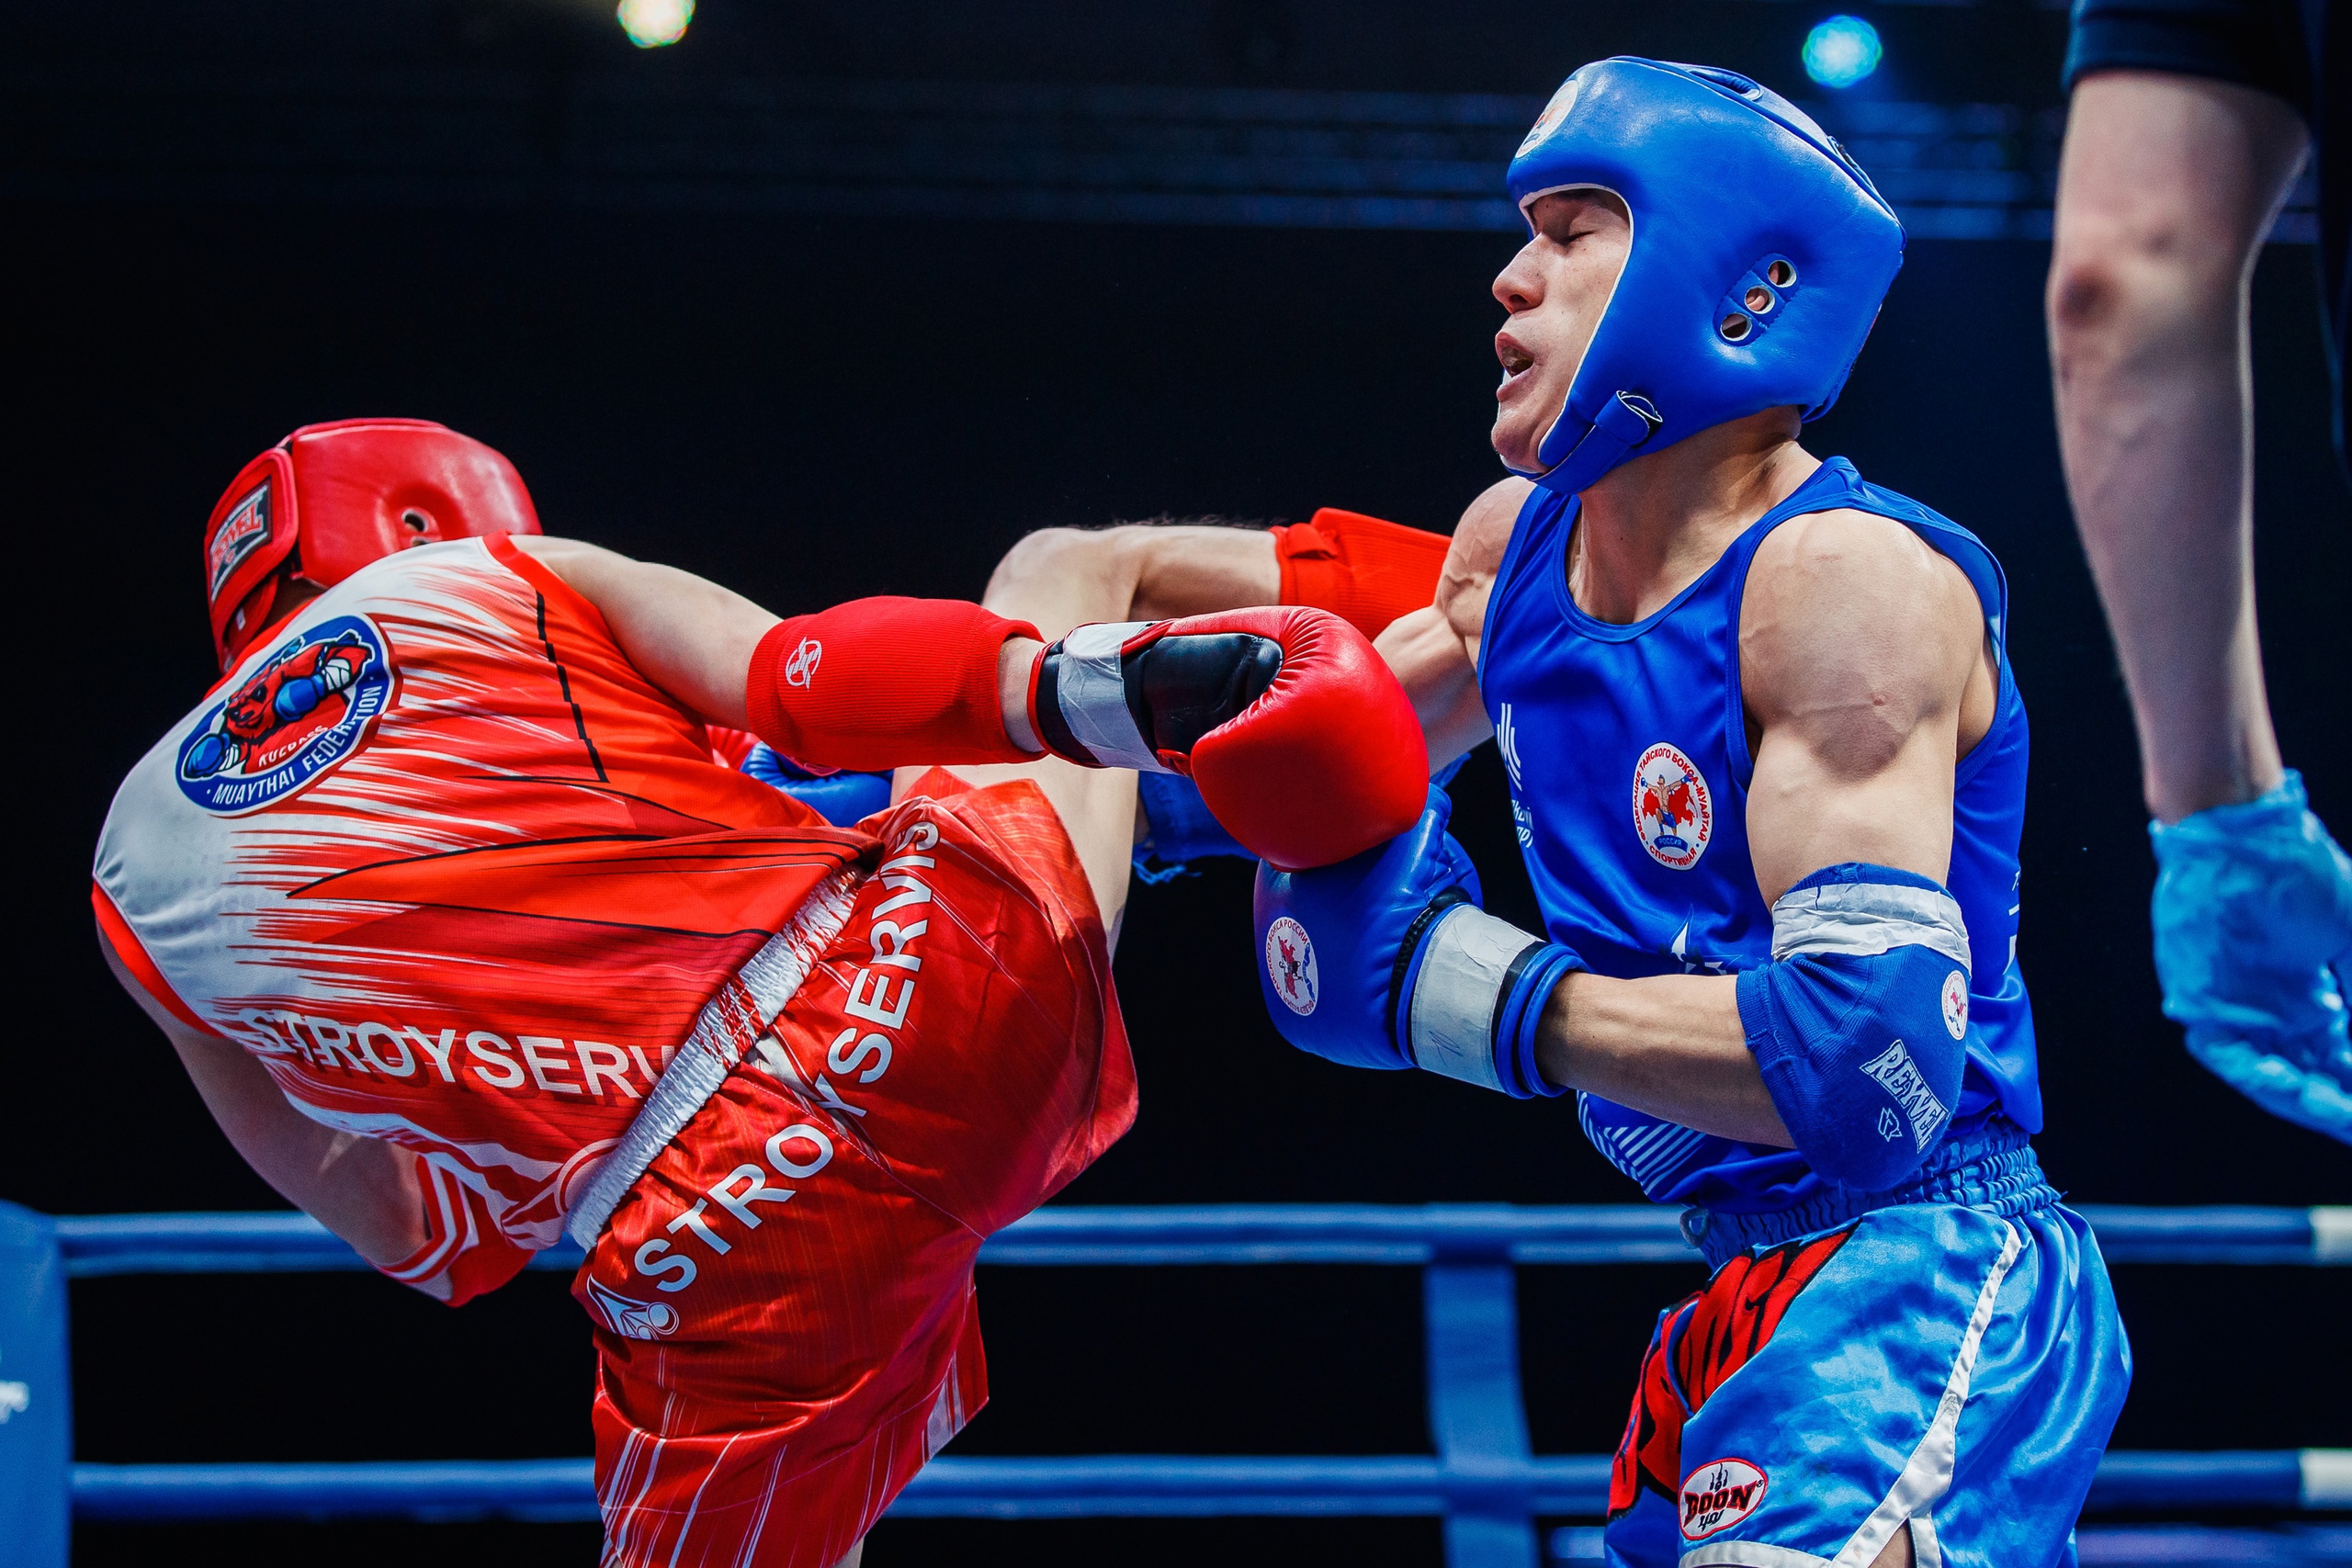 Тайский бокс стал олимпийским видом спорта. Стройсервис